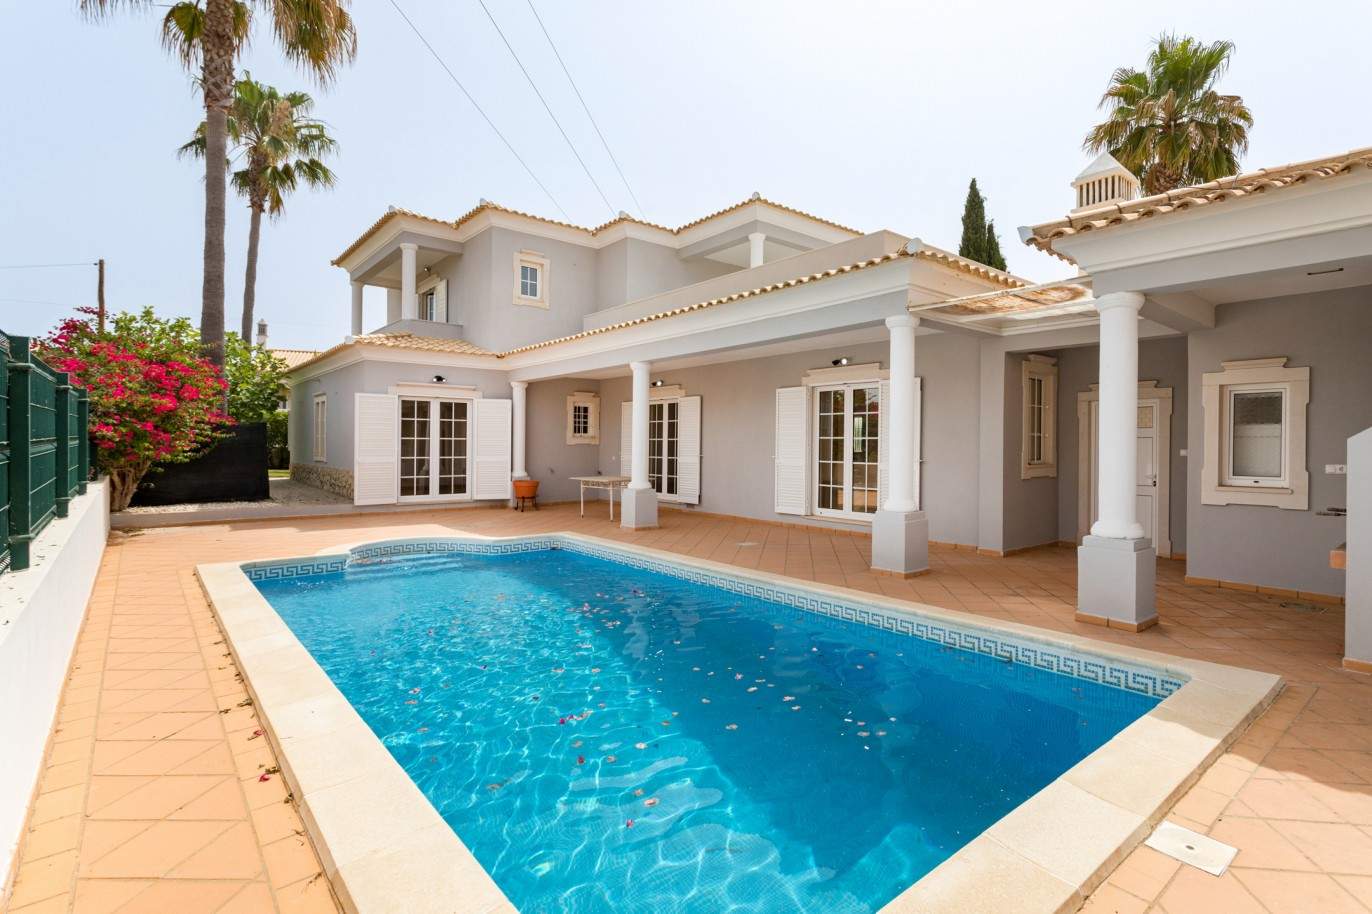 4 Bedroom Villa with pool à vendre à Quarteira, Algarve_201731